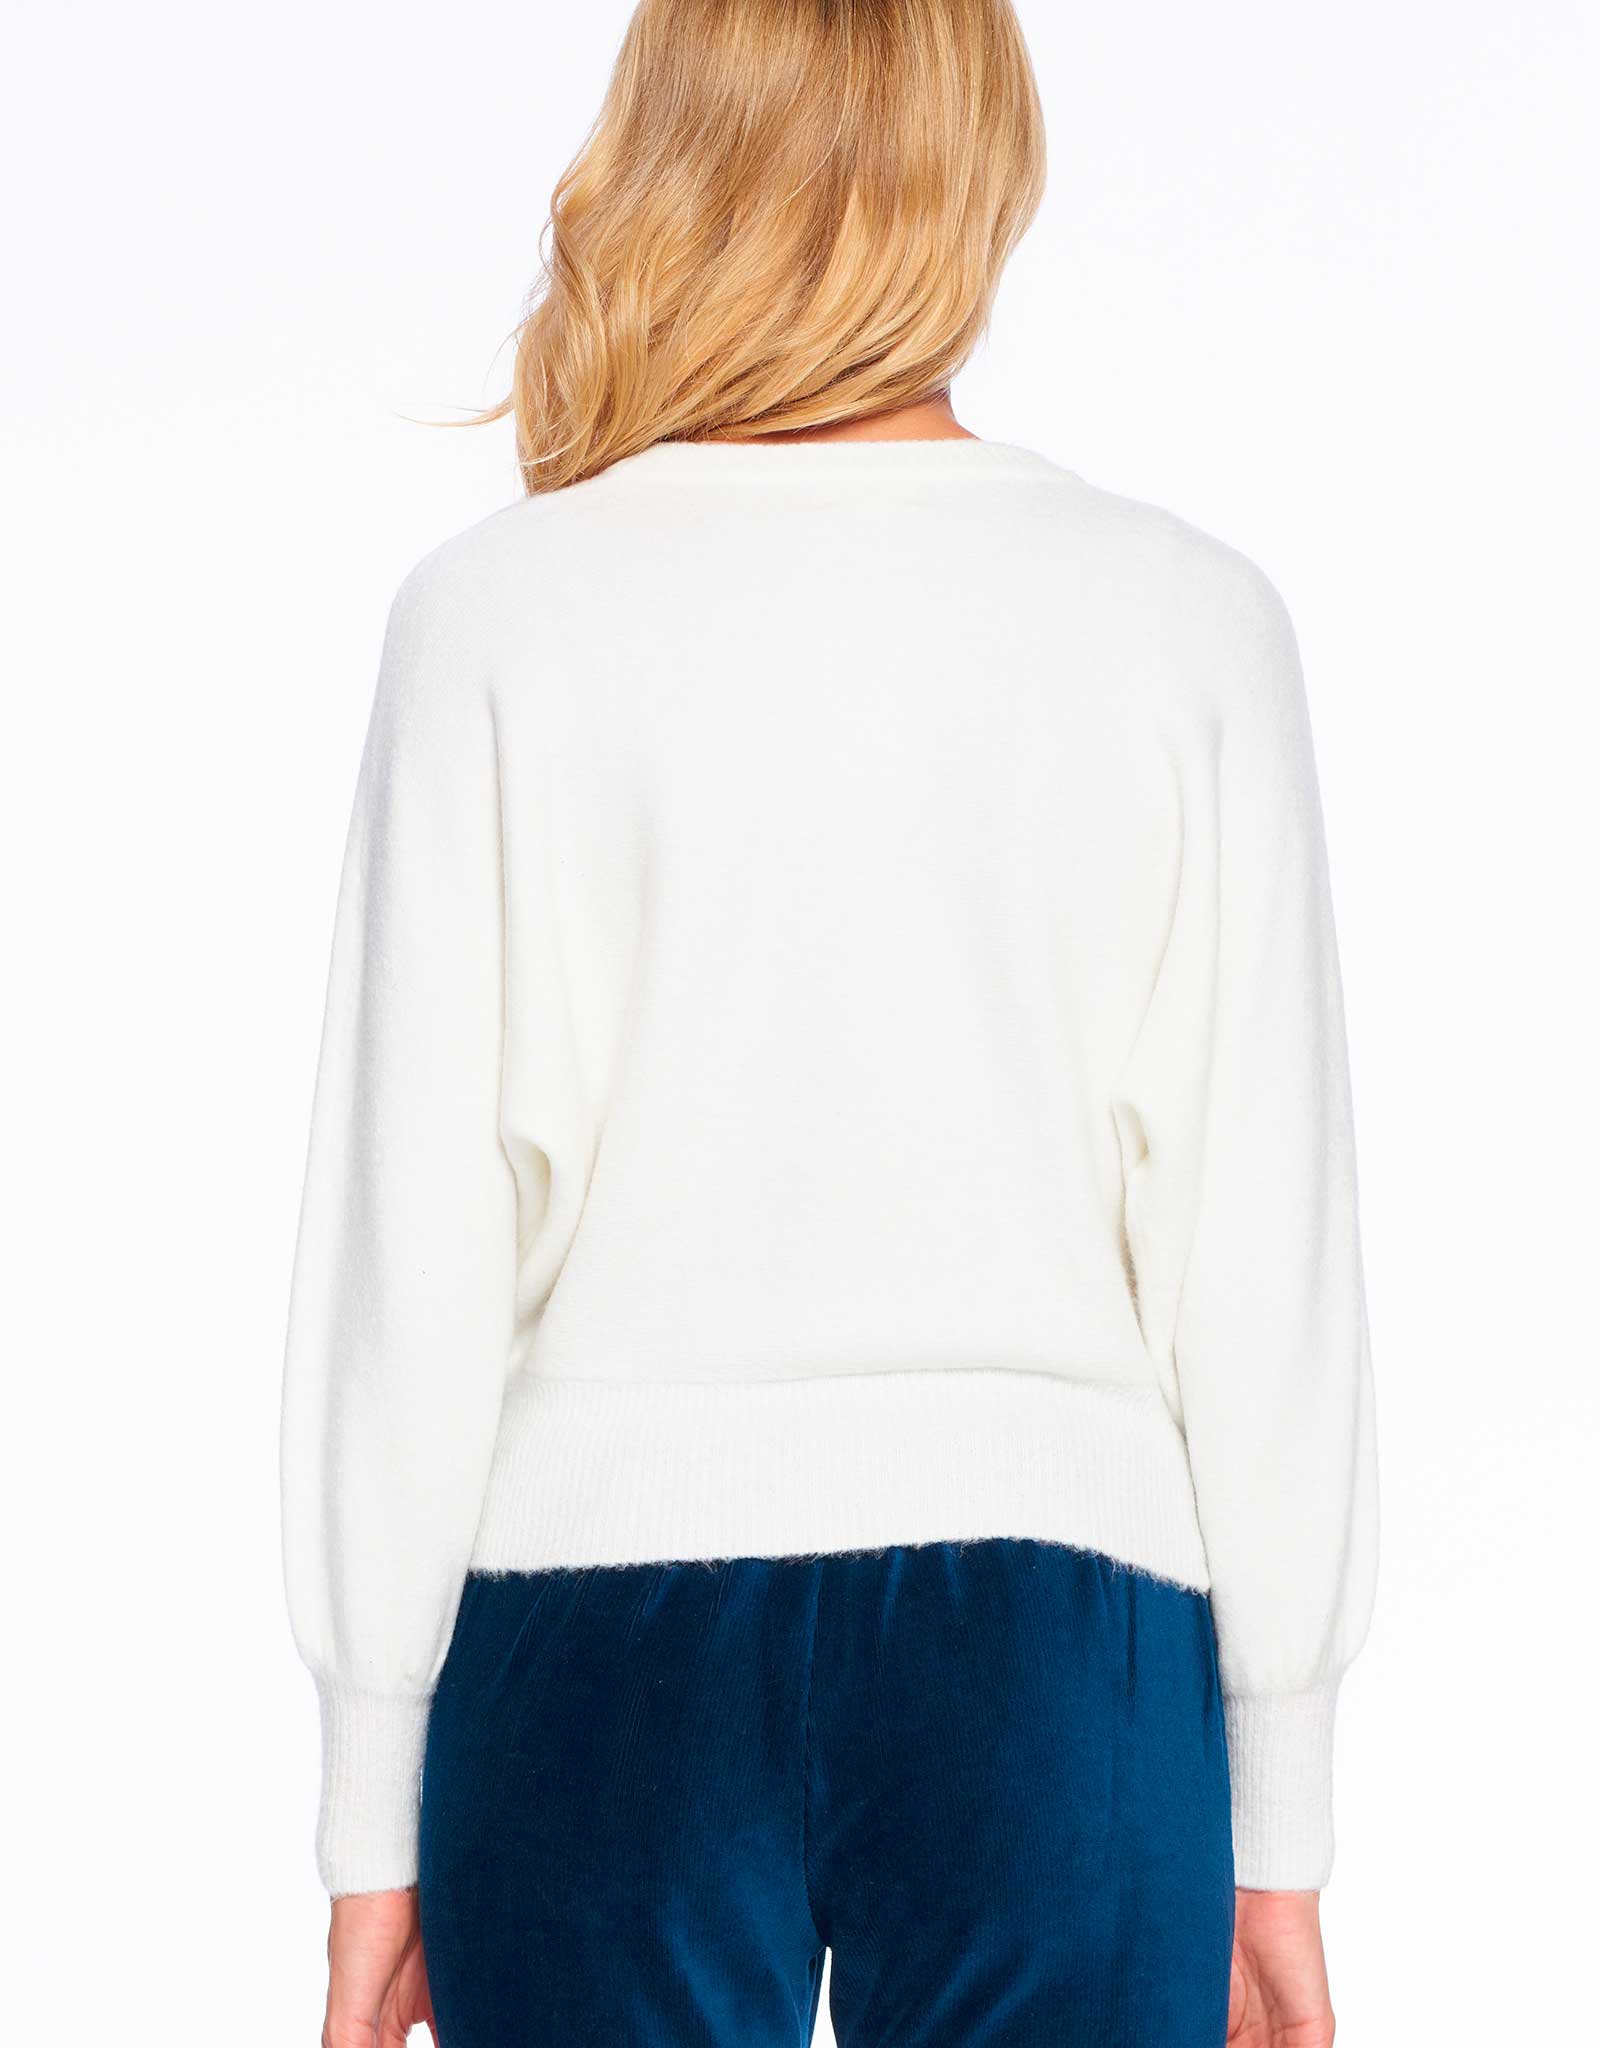 Chevron Stripe Sweater| Winter White | FINAL SALE